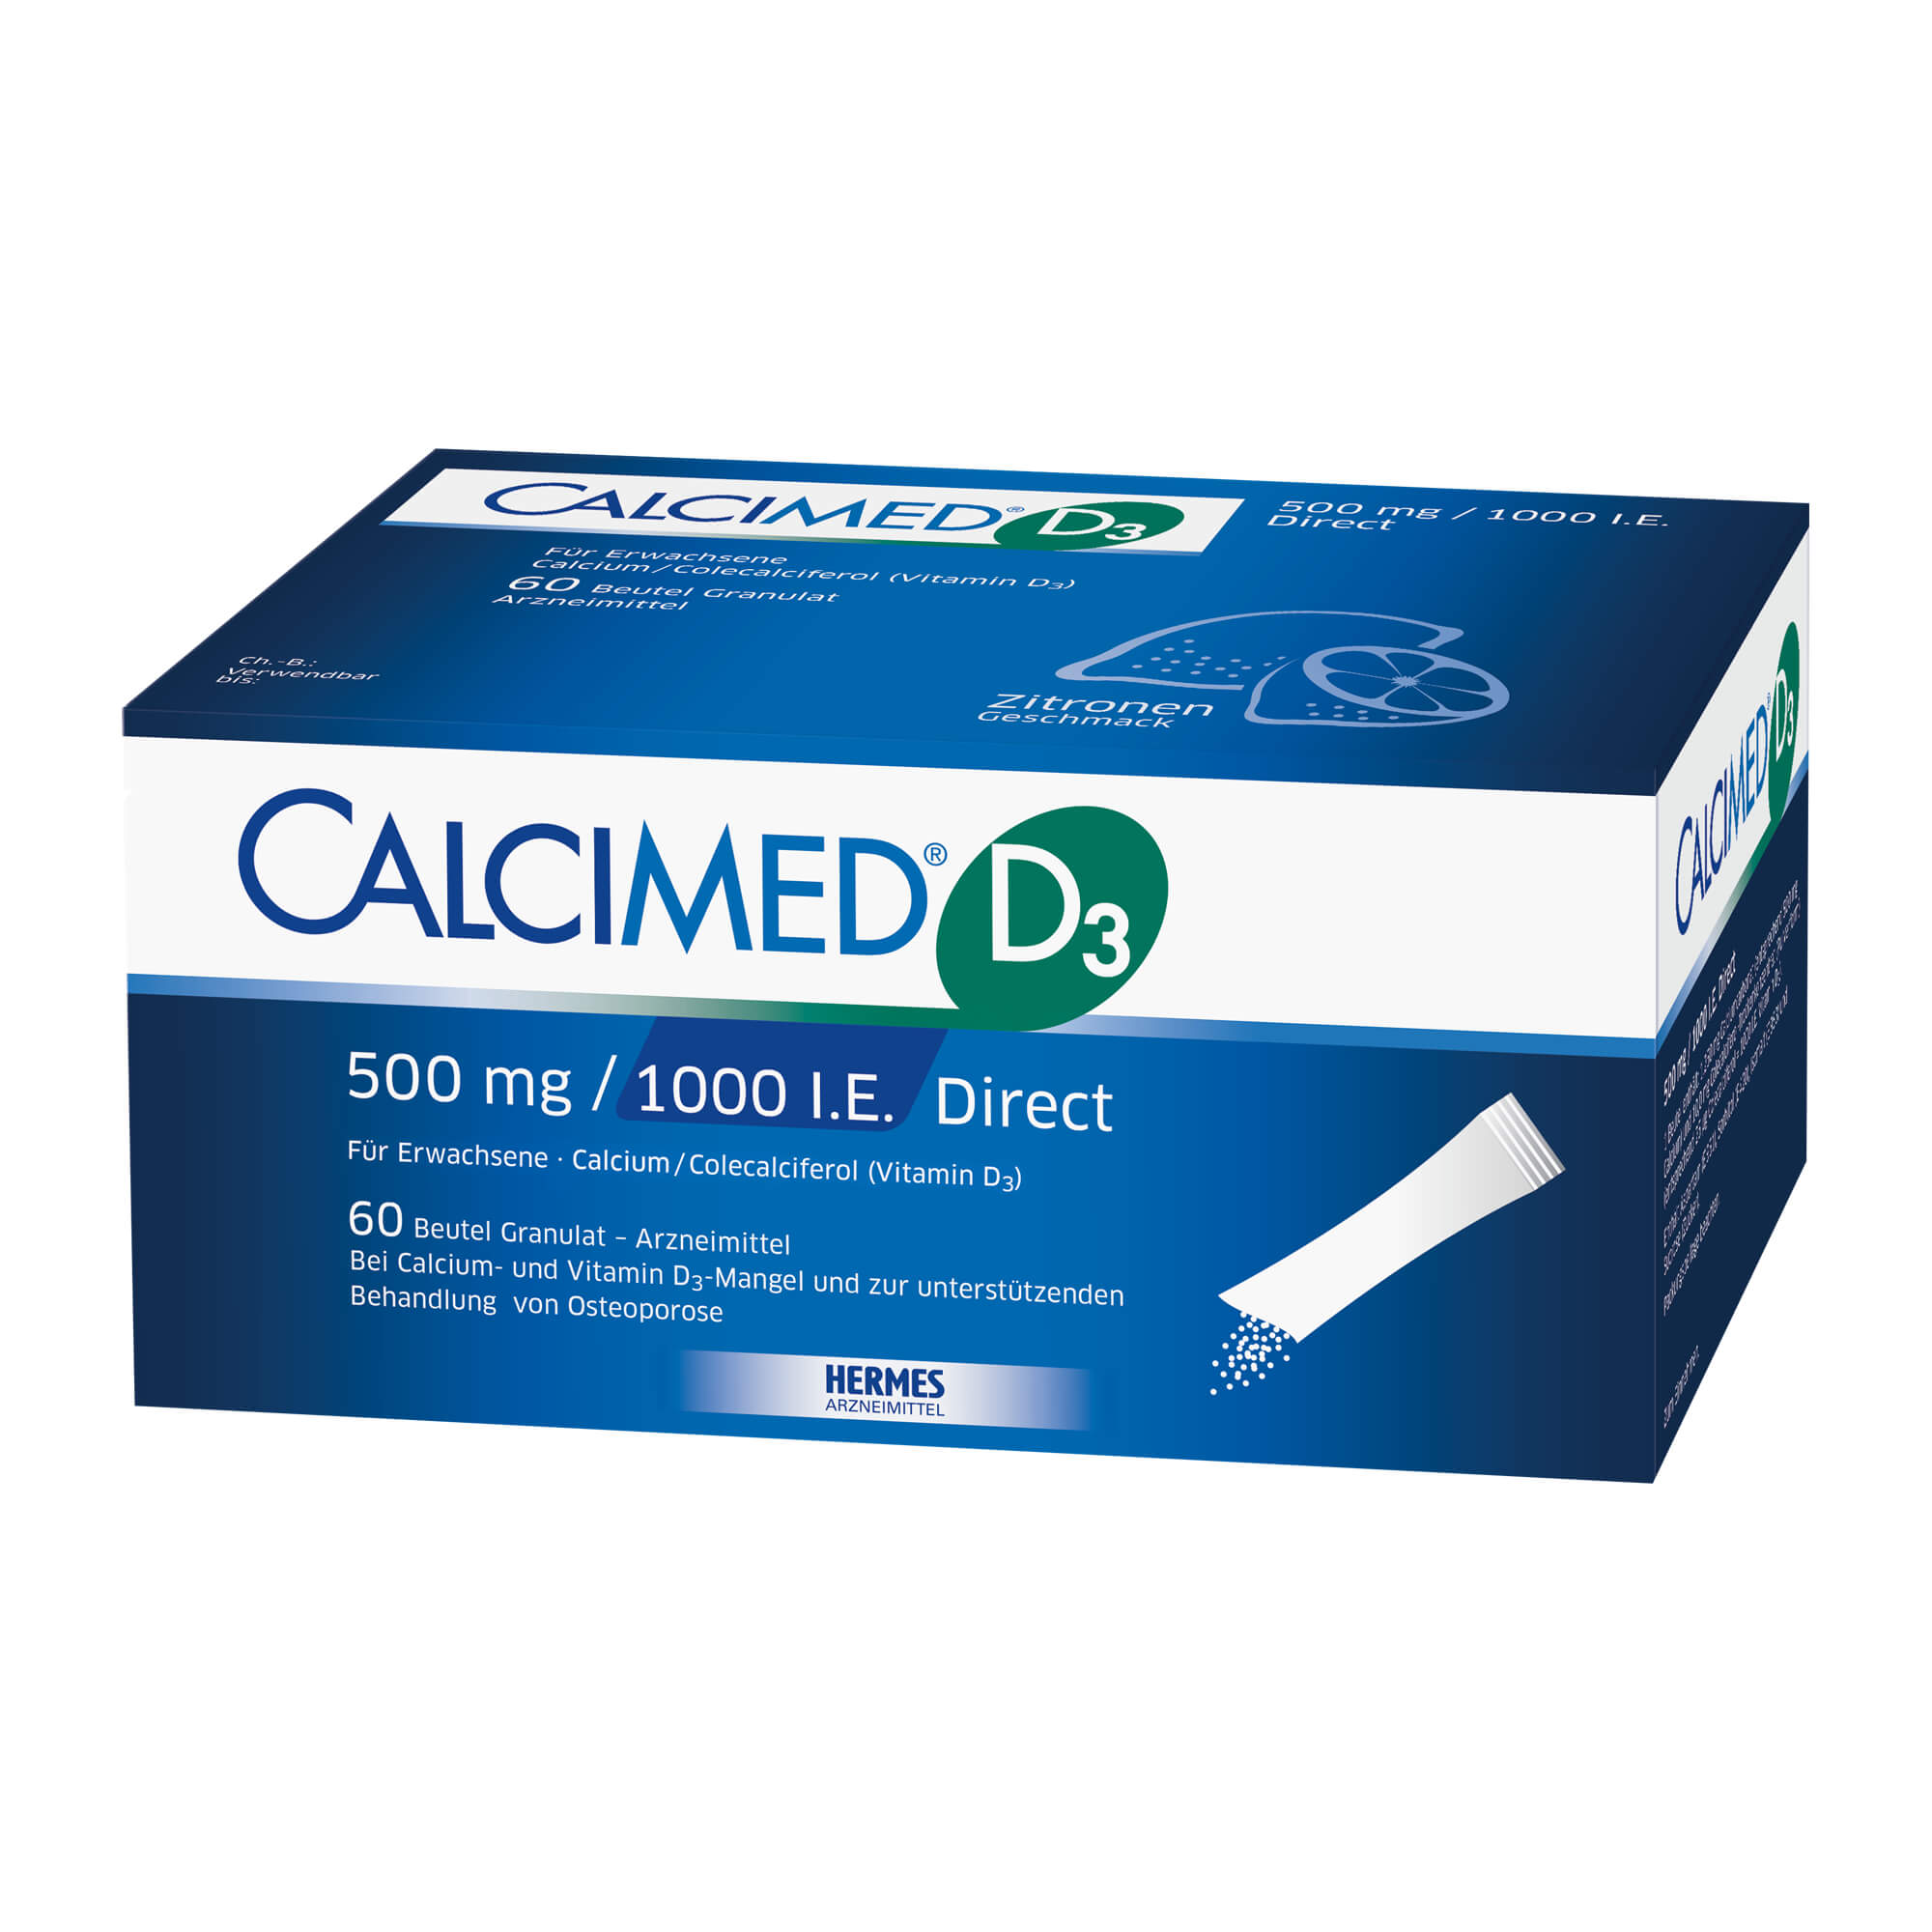 Calcium-Vitamin D3-Präparat. Zur Anwendung bei Erwachsenen. Mit Zitronengeschmack.